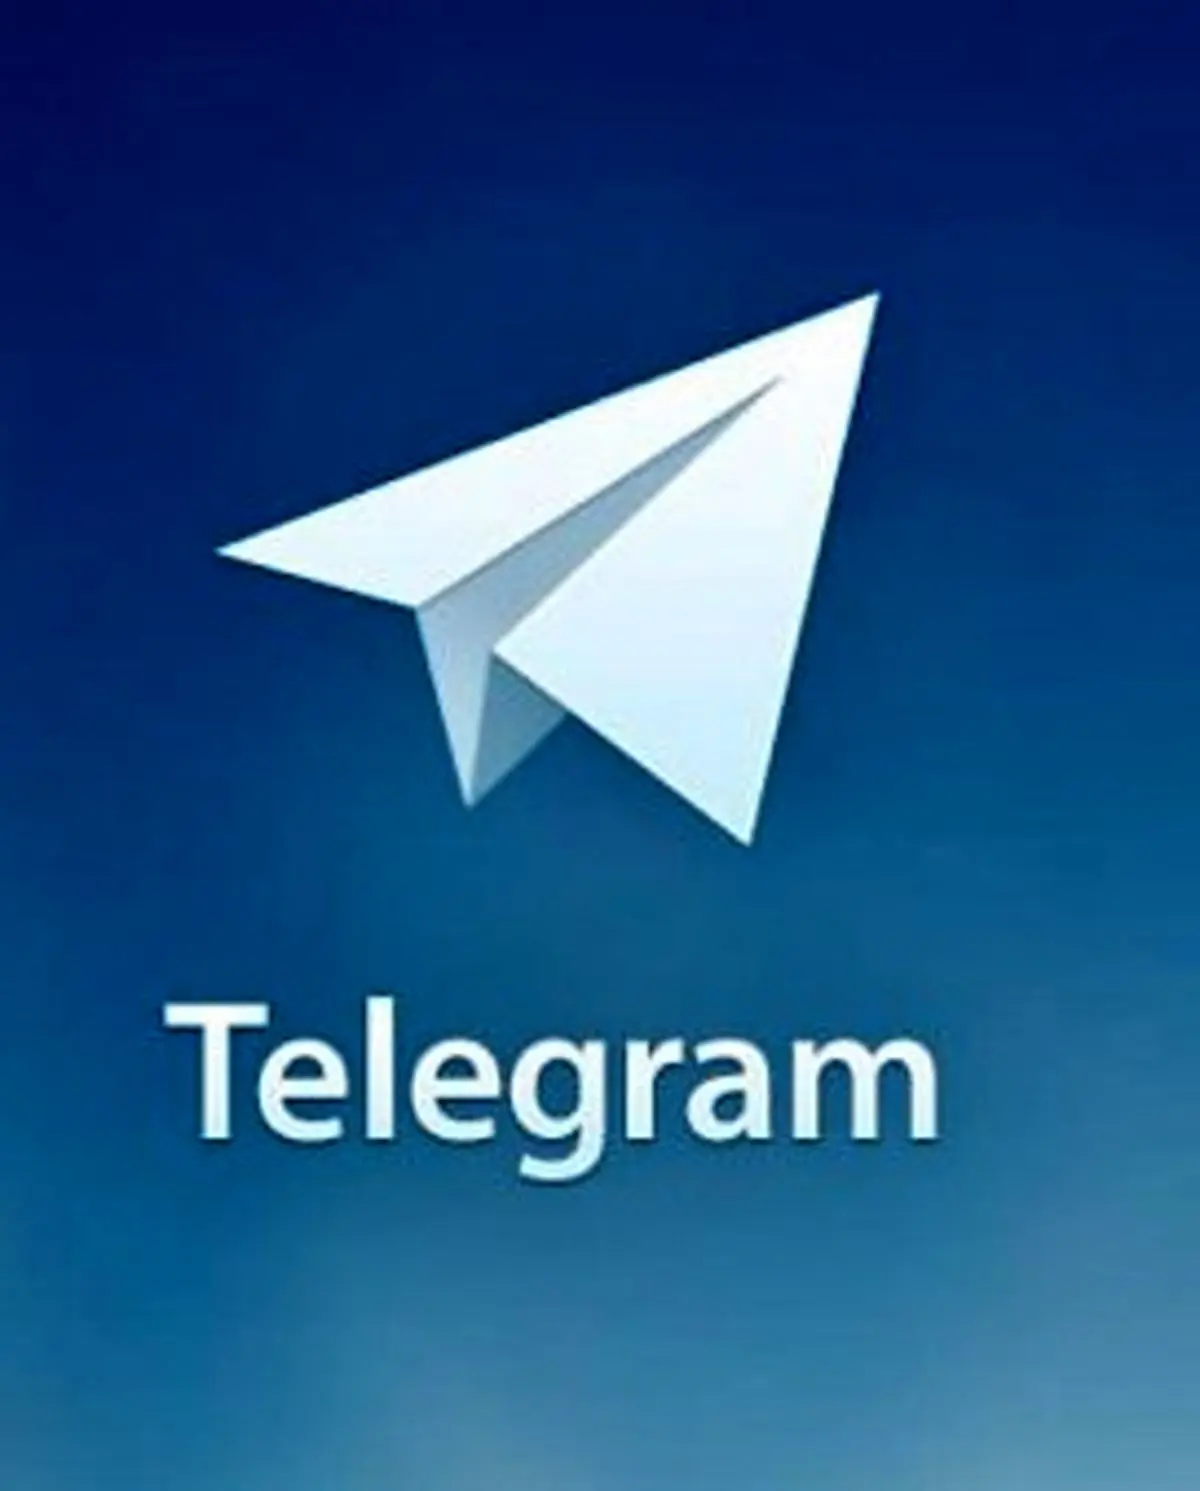 اندونزی تلگرام را مسدود کرد